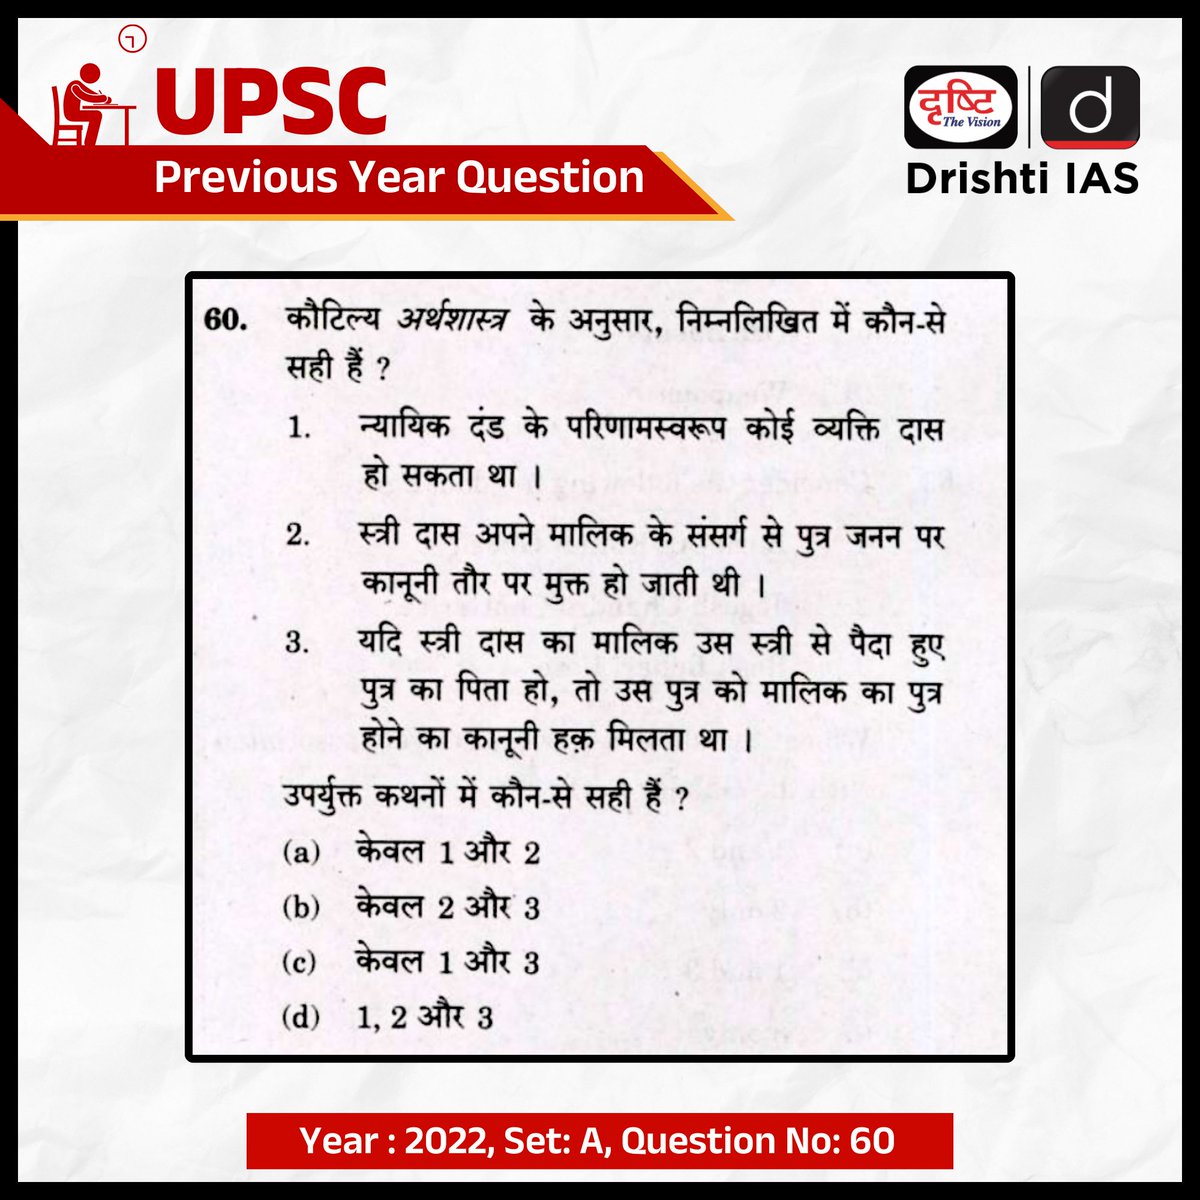 सिविल सेवा प्रारंभिक परीक्षा- 2022

हम इस प्रश्न का सही उत्तर अगले दिन कमेंट बॉक्स में पिन करेंगे।

सिविल सेवा प्रारंभिक परीक्षा- 2024 के लिए  हमारा “ IAS प्रिलिम्स (G.S) लाइव ऑनलाइन” कोर्स उपलब्ध है।
अधिक जानकारी के लिए क्लिक करें इस लिंक पर:  drishti.link/Prelims-GS-PYQ

#UPSC